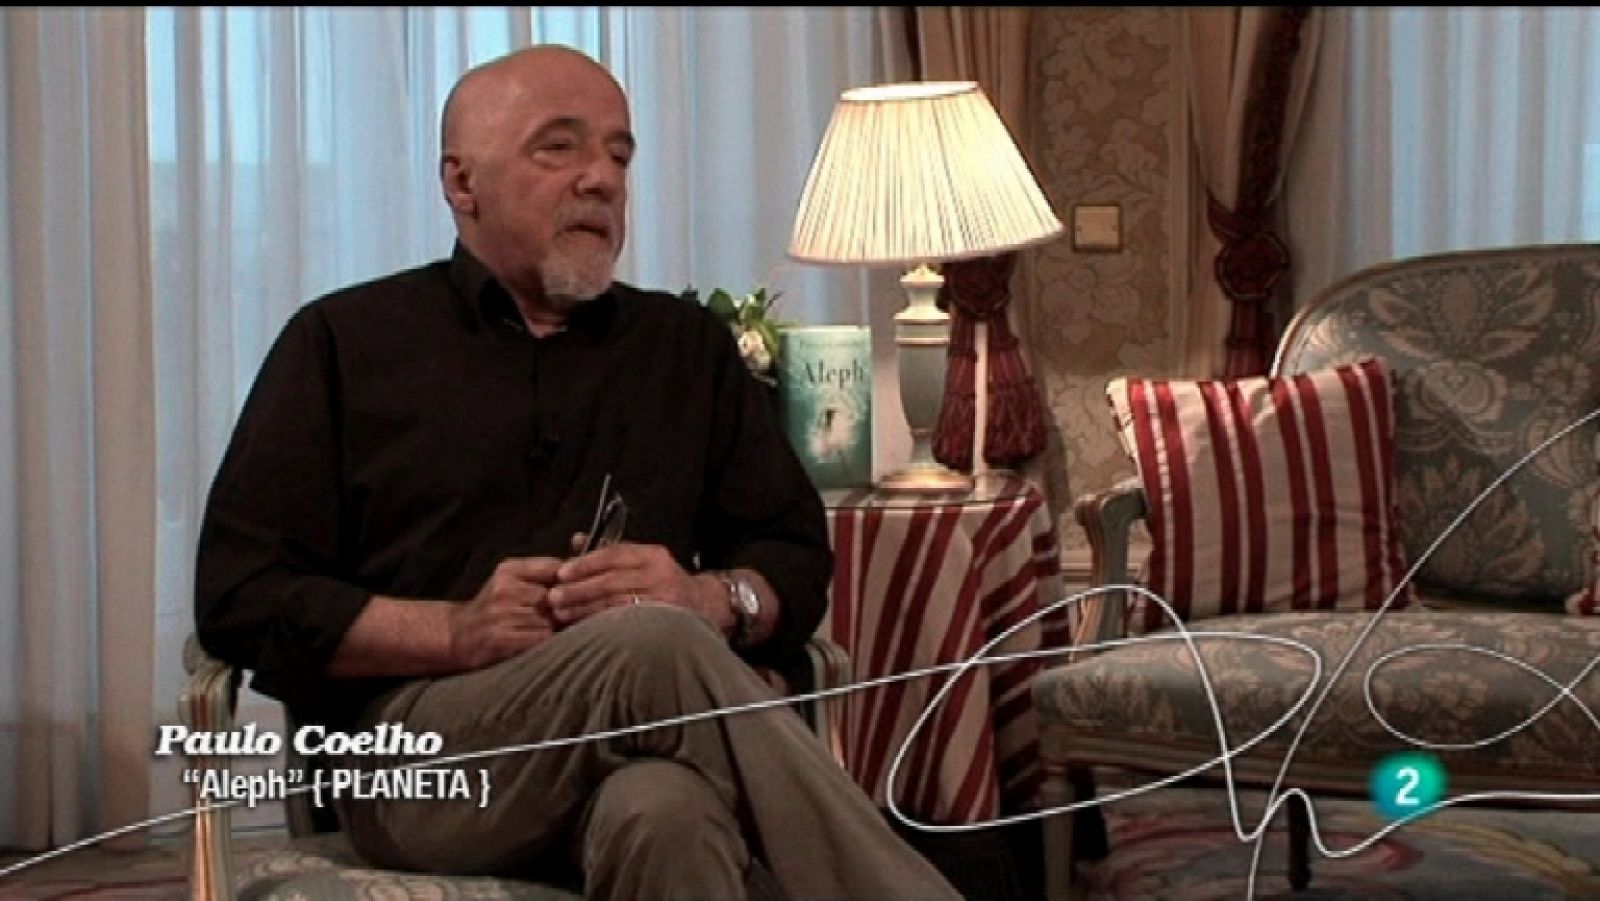 Página 2 - Paulo Coelho - 11/12/11